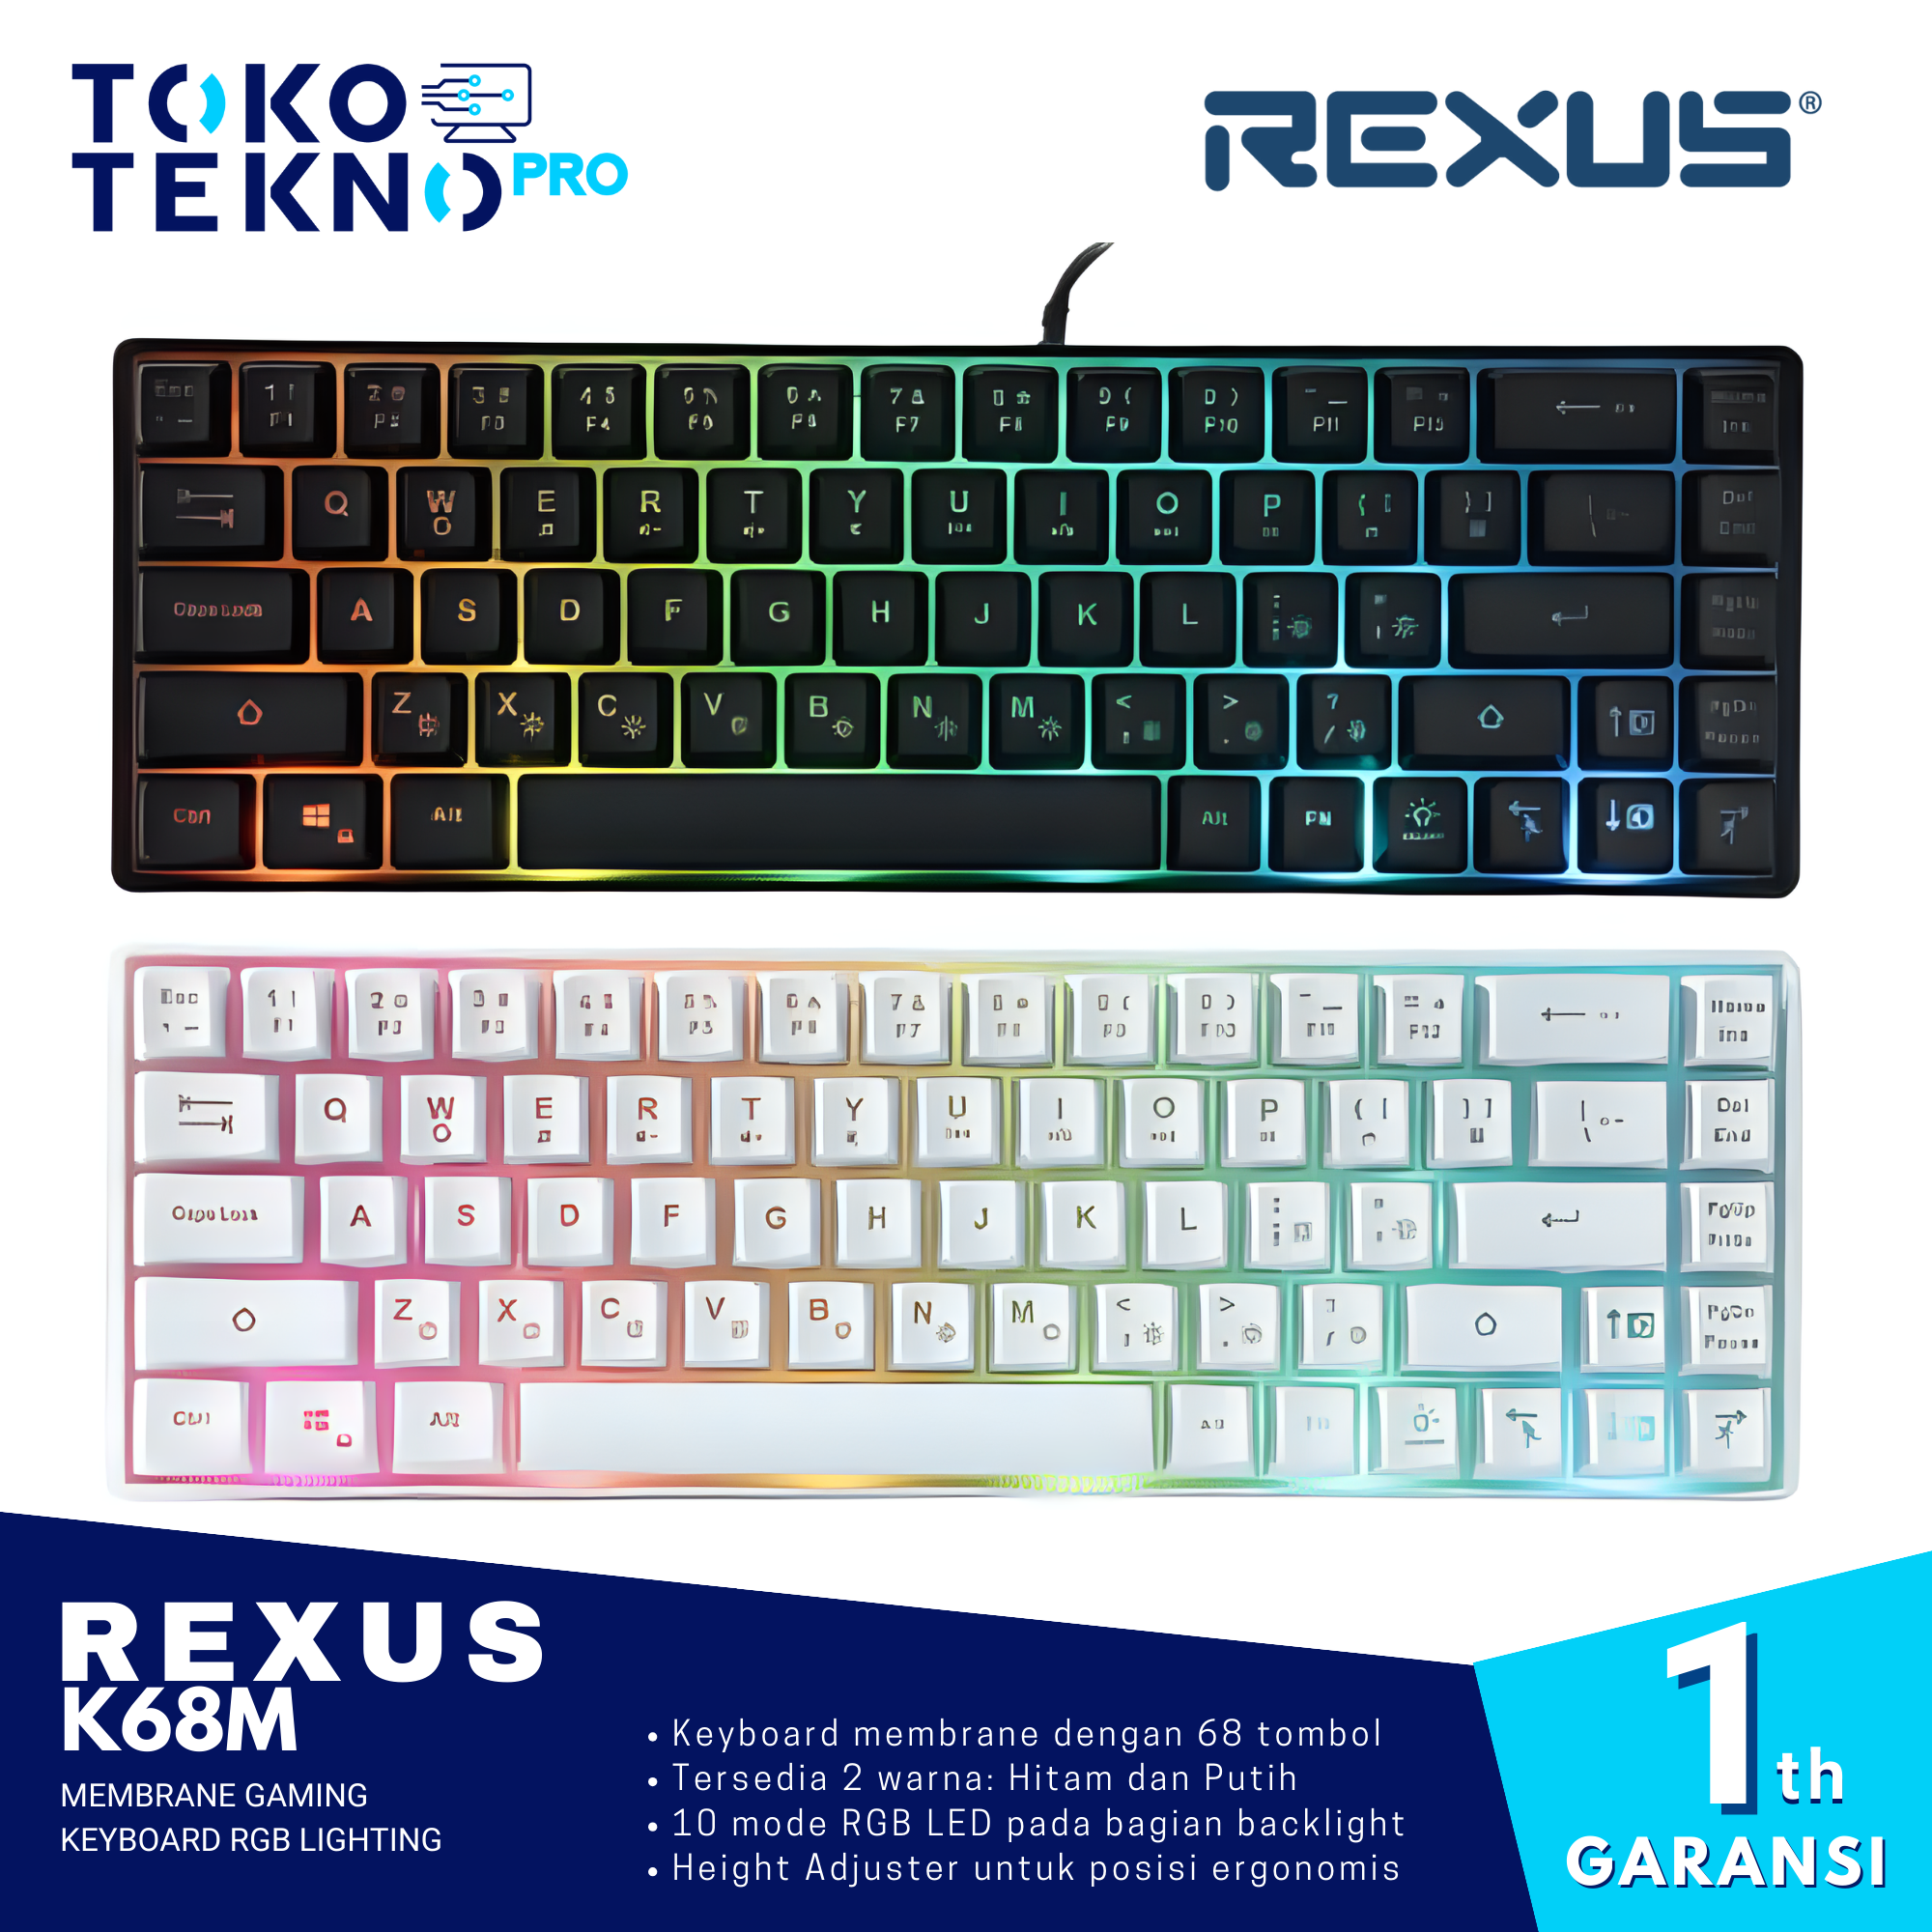 Rexus K68M / K68-M Membrane Gaming Keyboard RGB Lighting